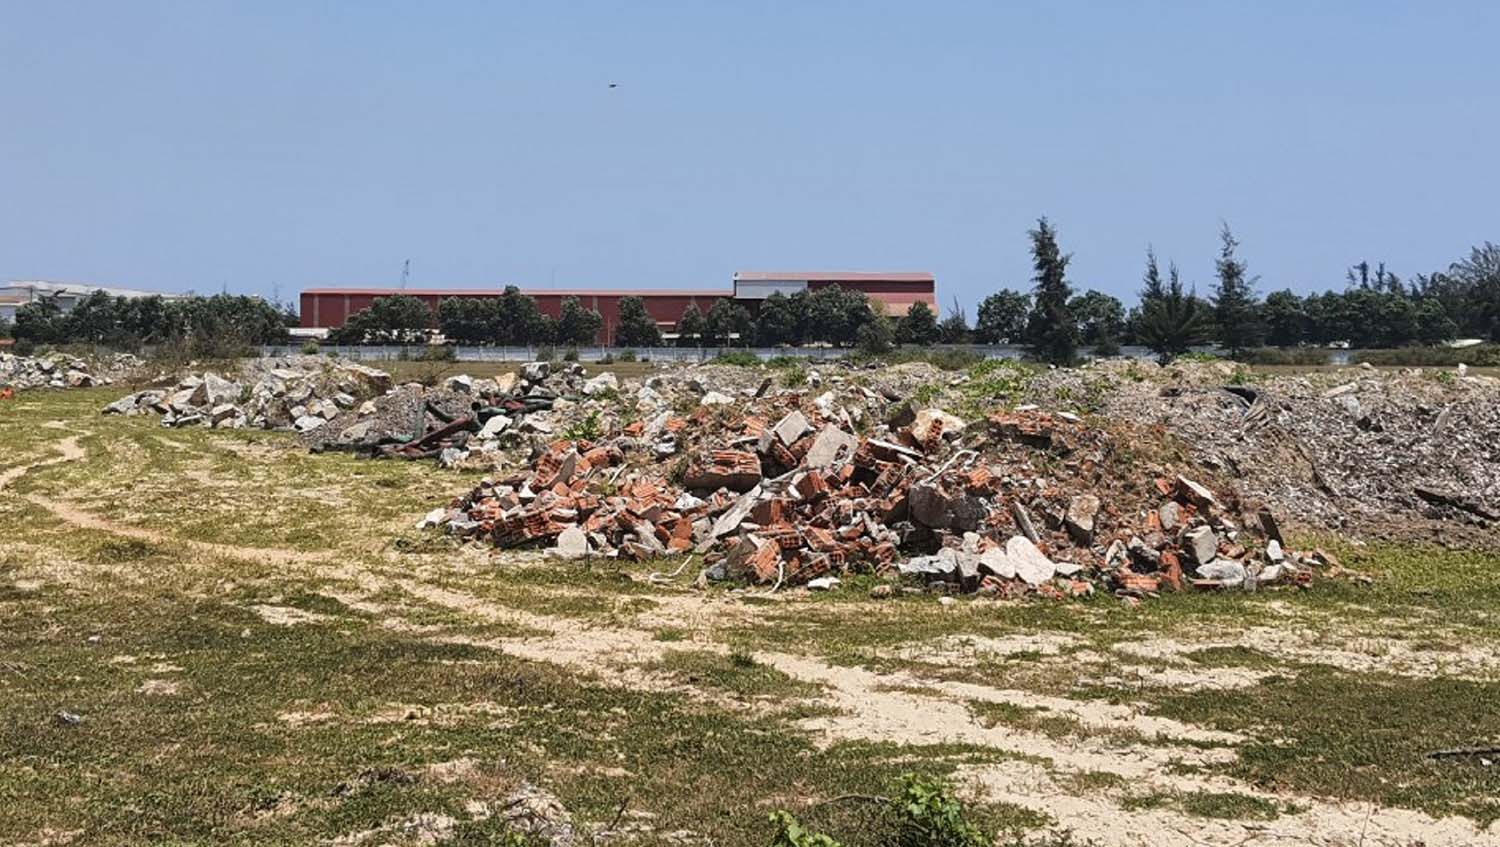 Sau hơn 10 năm, khu đất được giao cho Công ty KIC Việt Nam vẫn là đống hoang tàn, bỏ hoang